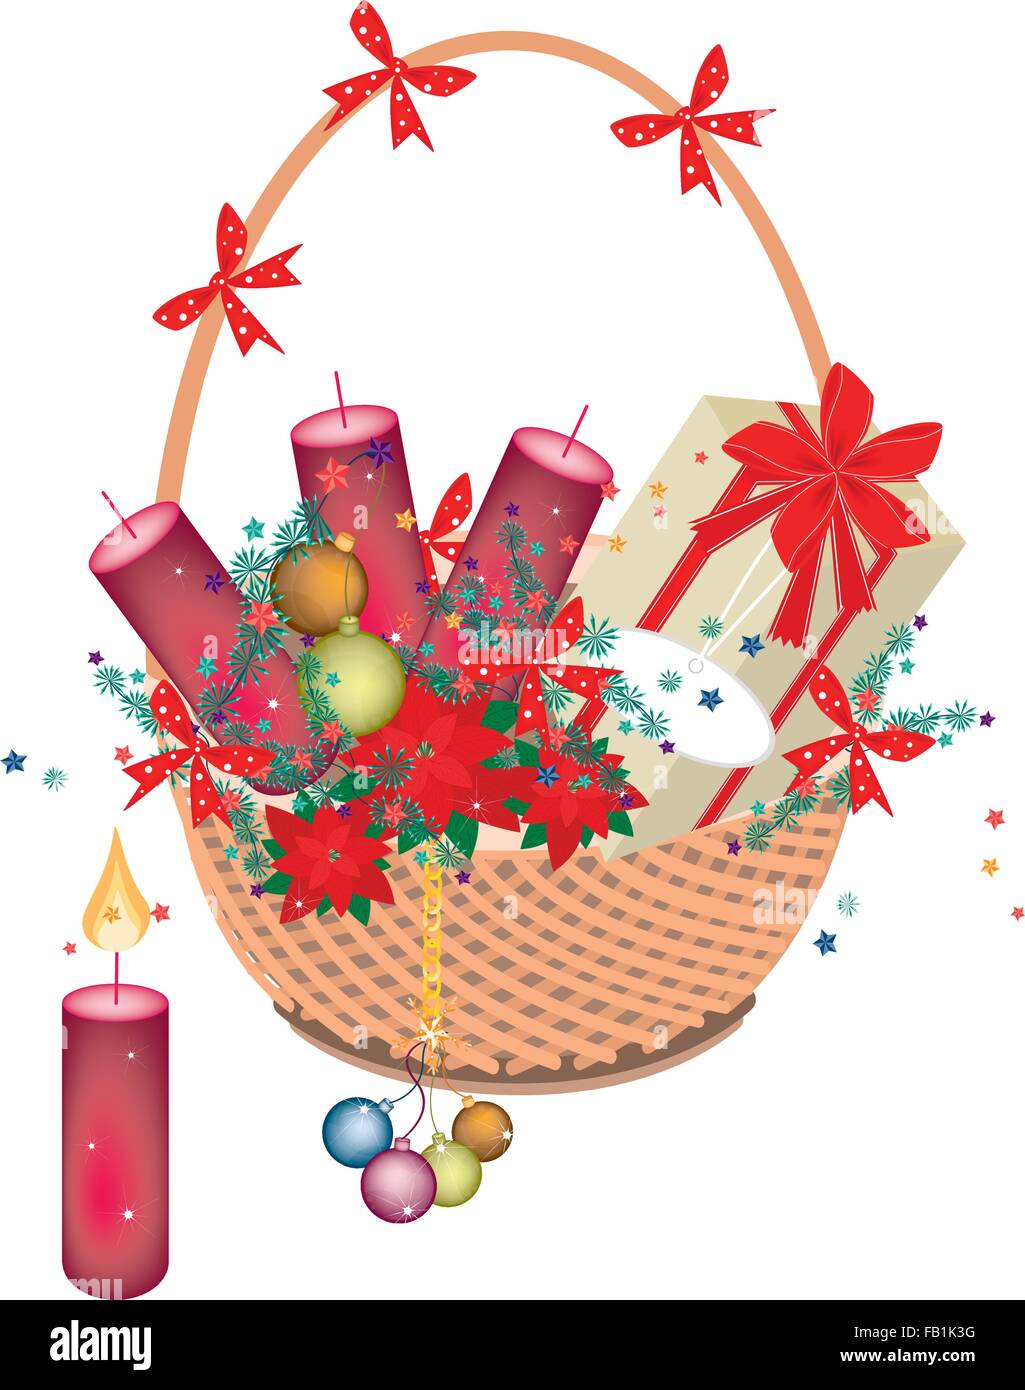 Poinsettia rouge plantes avec bougies de Noël, Boule de Noël, Décorations de Noël, bougies et boîte-cadeau sur un beau soleil en osier Illustration de Vecteur